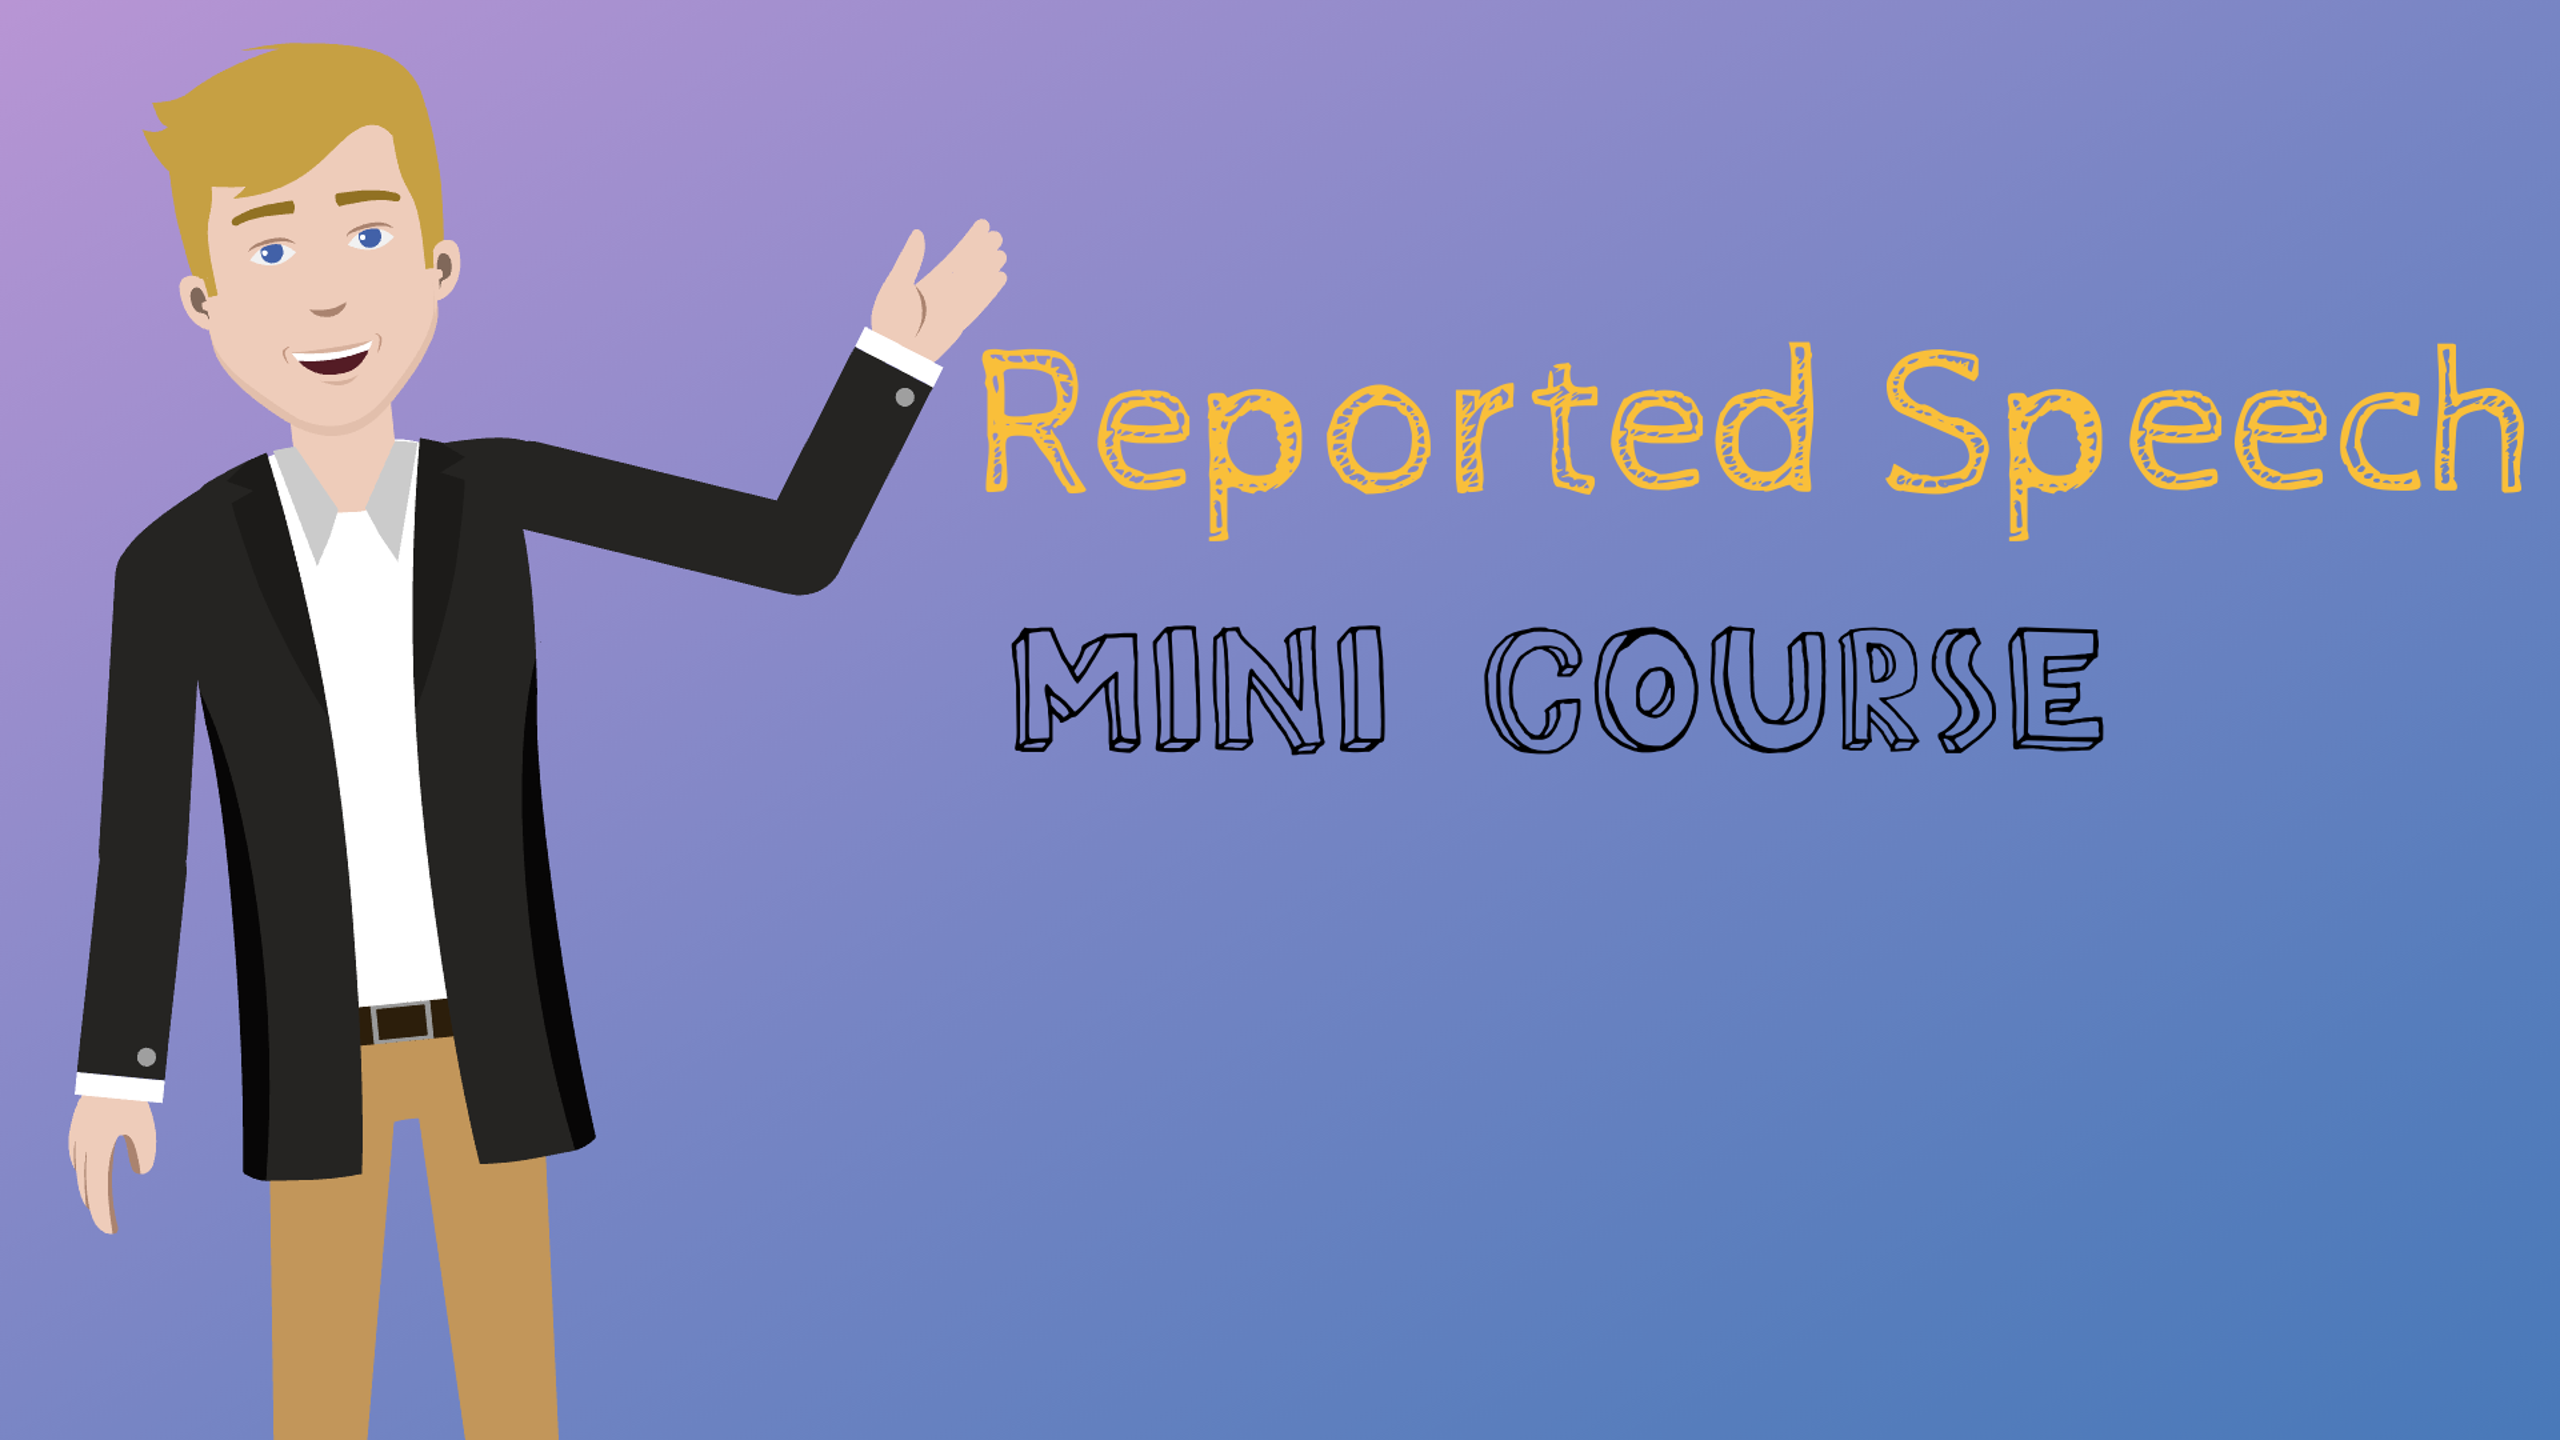 Reported speech mini course cover